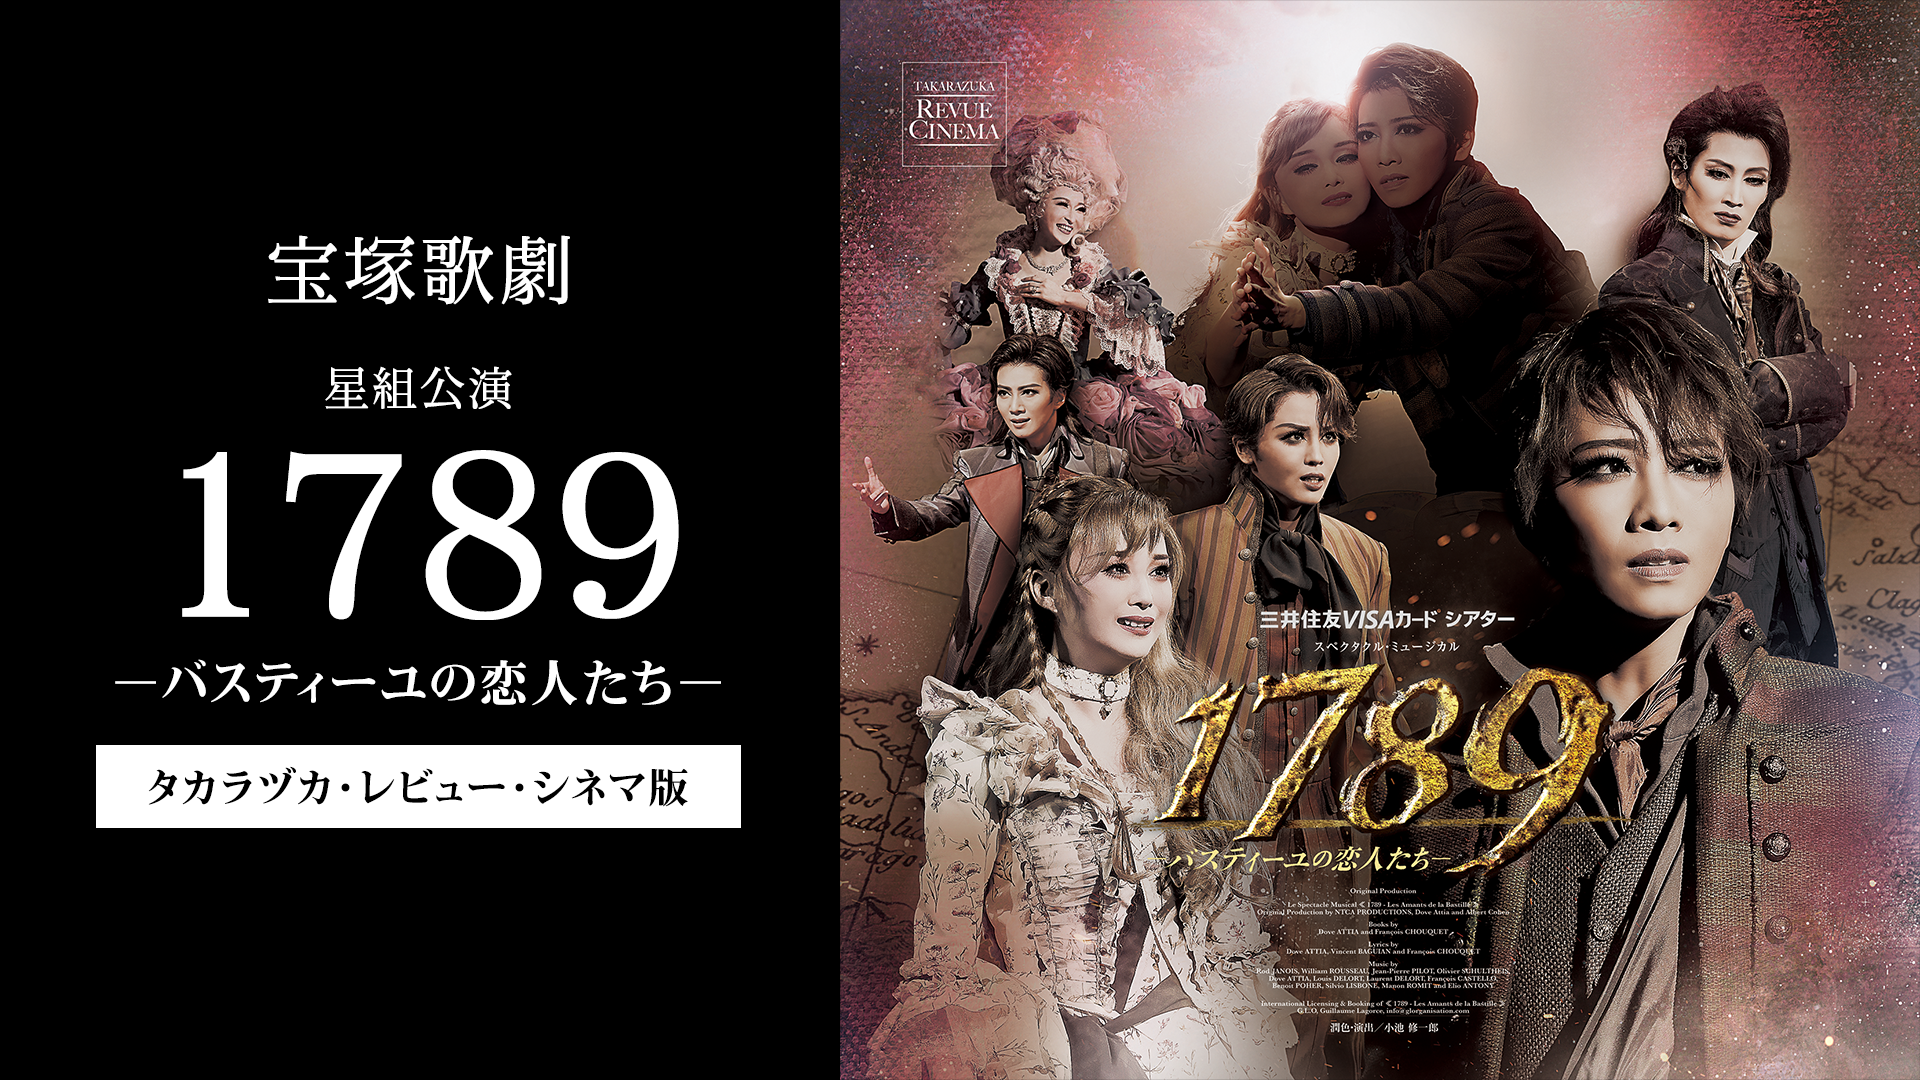 宝塚歌劇 星組公演『1789 －バスティーユの恋人たち－』タカラヅカ 